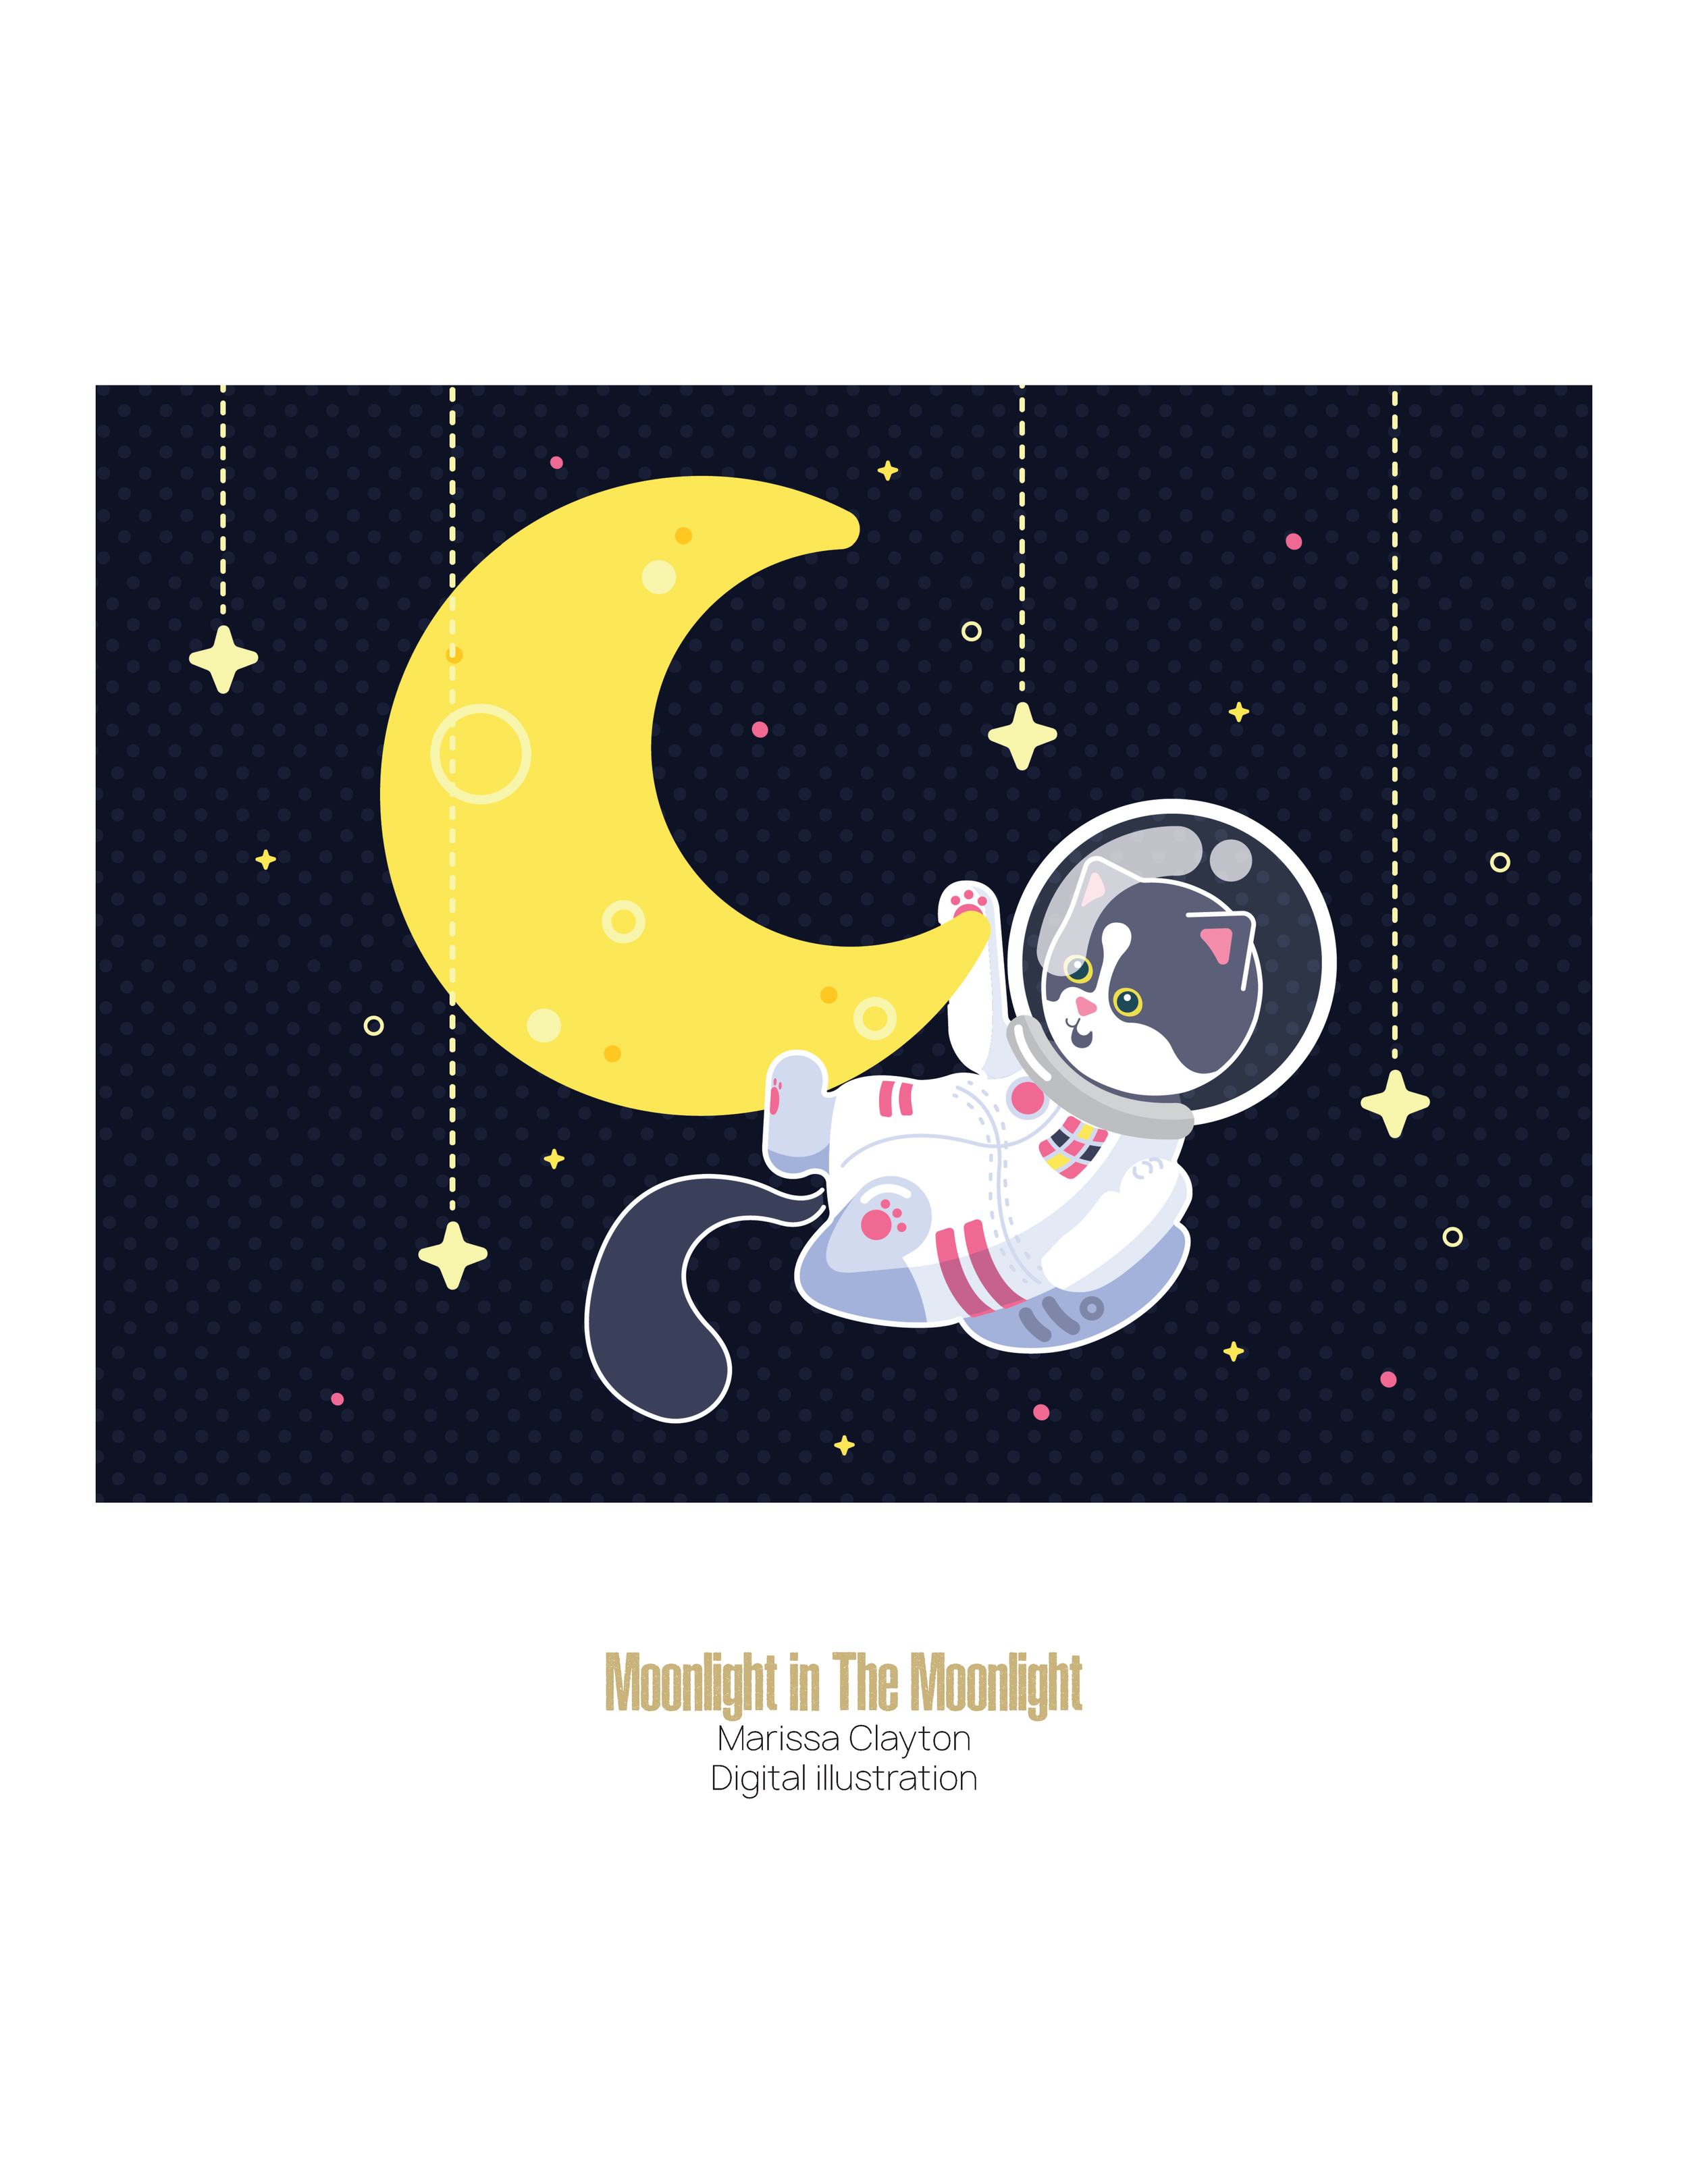 Moonlight in the Moonlight by Marissa Clayton, Digital Illustration